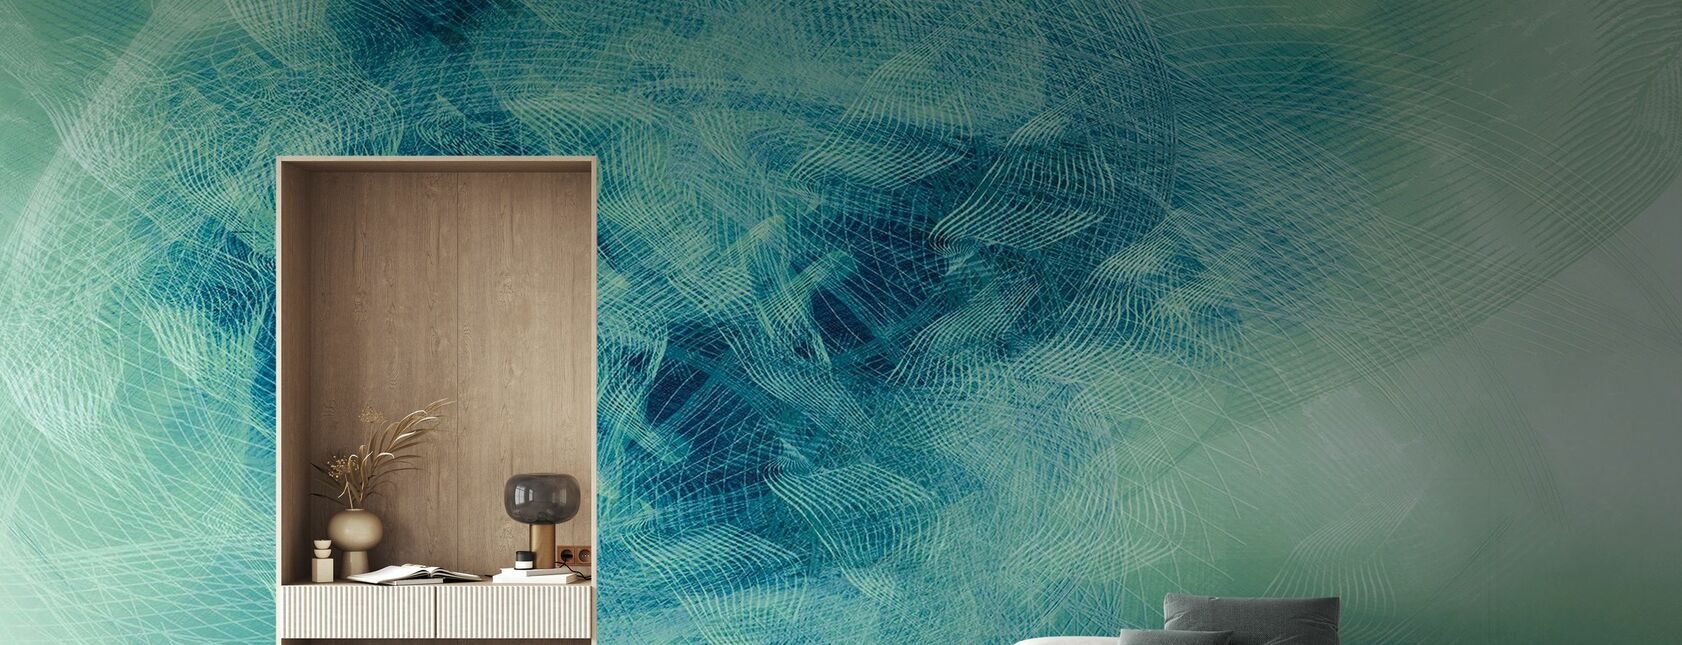 Liquid Lines - Green Blue - Wallpaper - Living Room